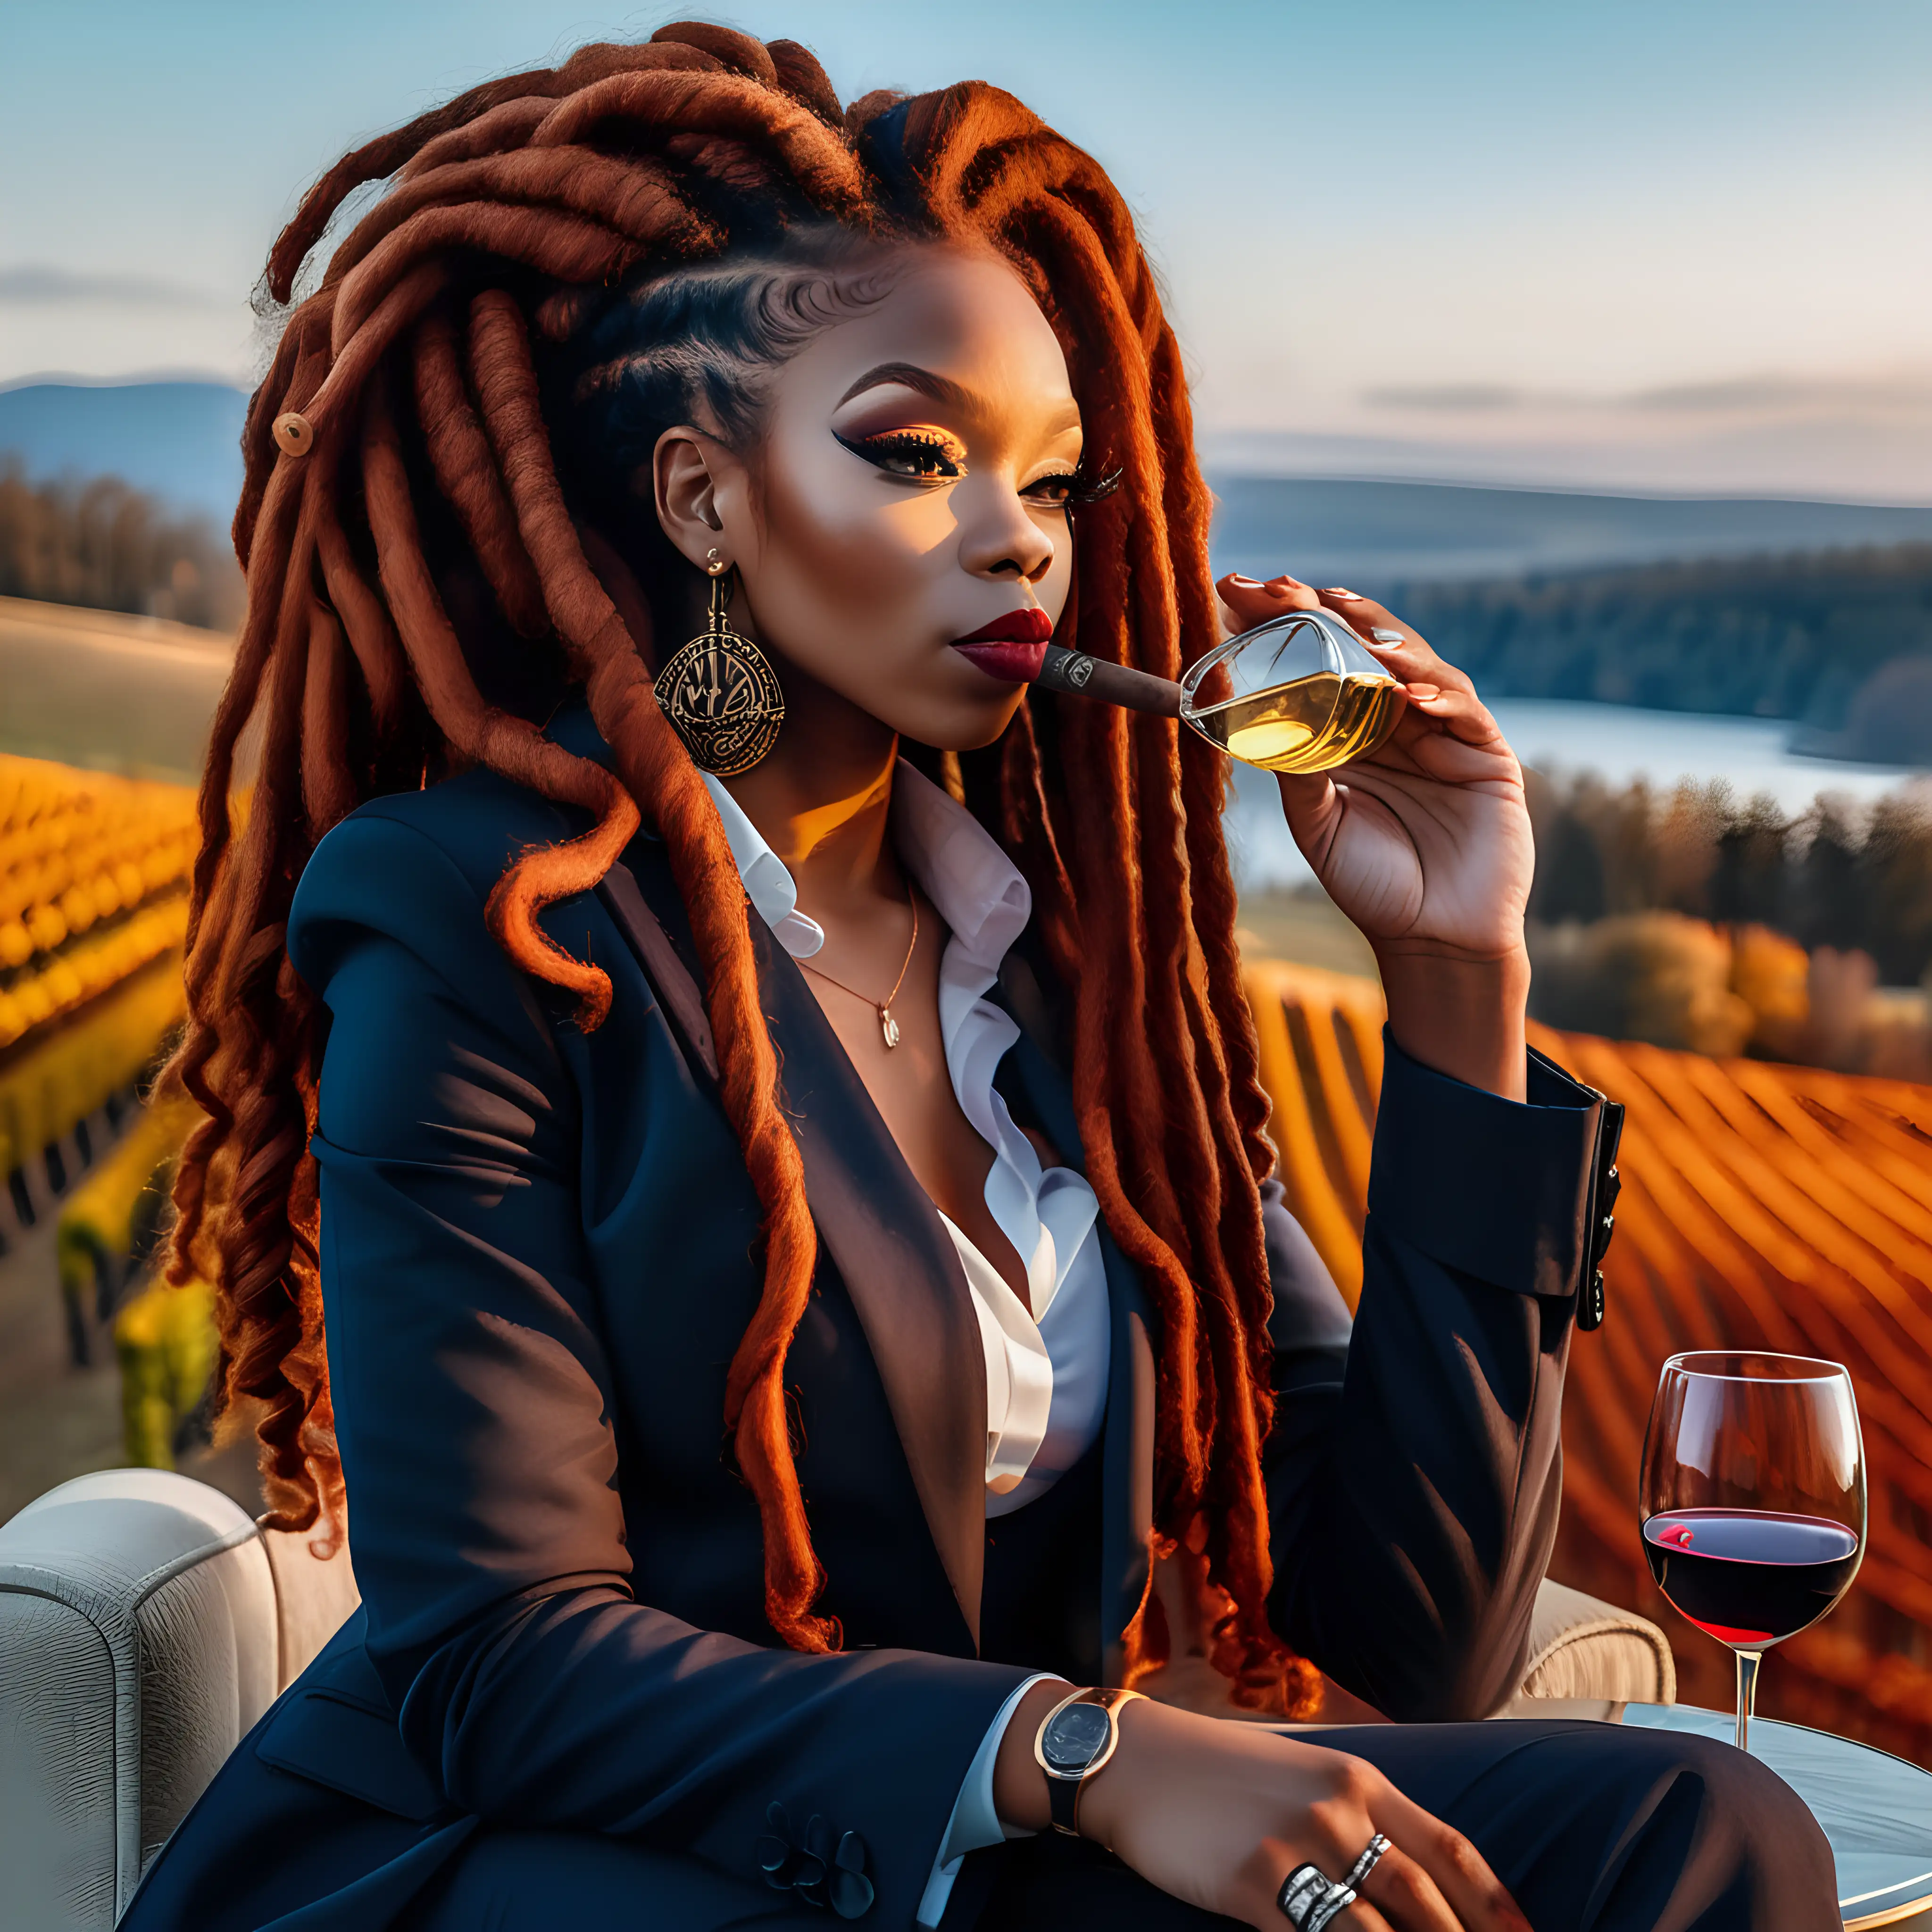 Elegant Black Woman Enjoying Luxury Winery Lifestyle with Wine and Cigar